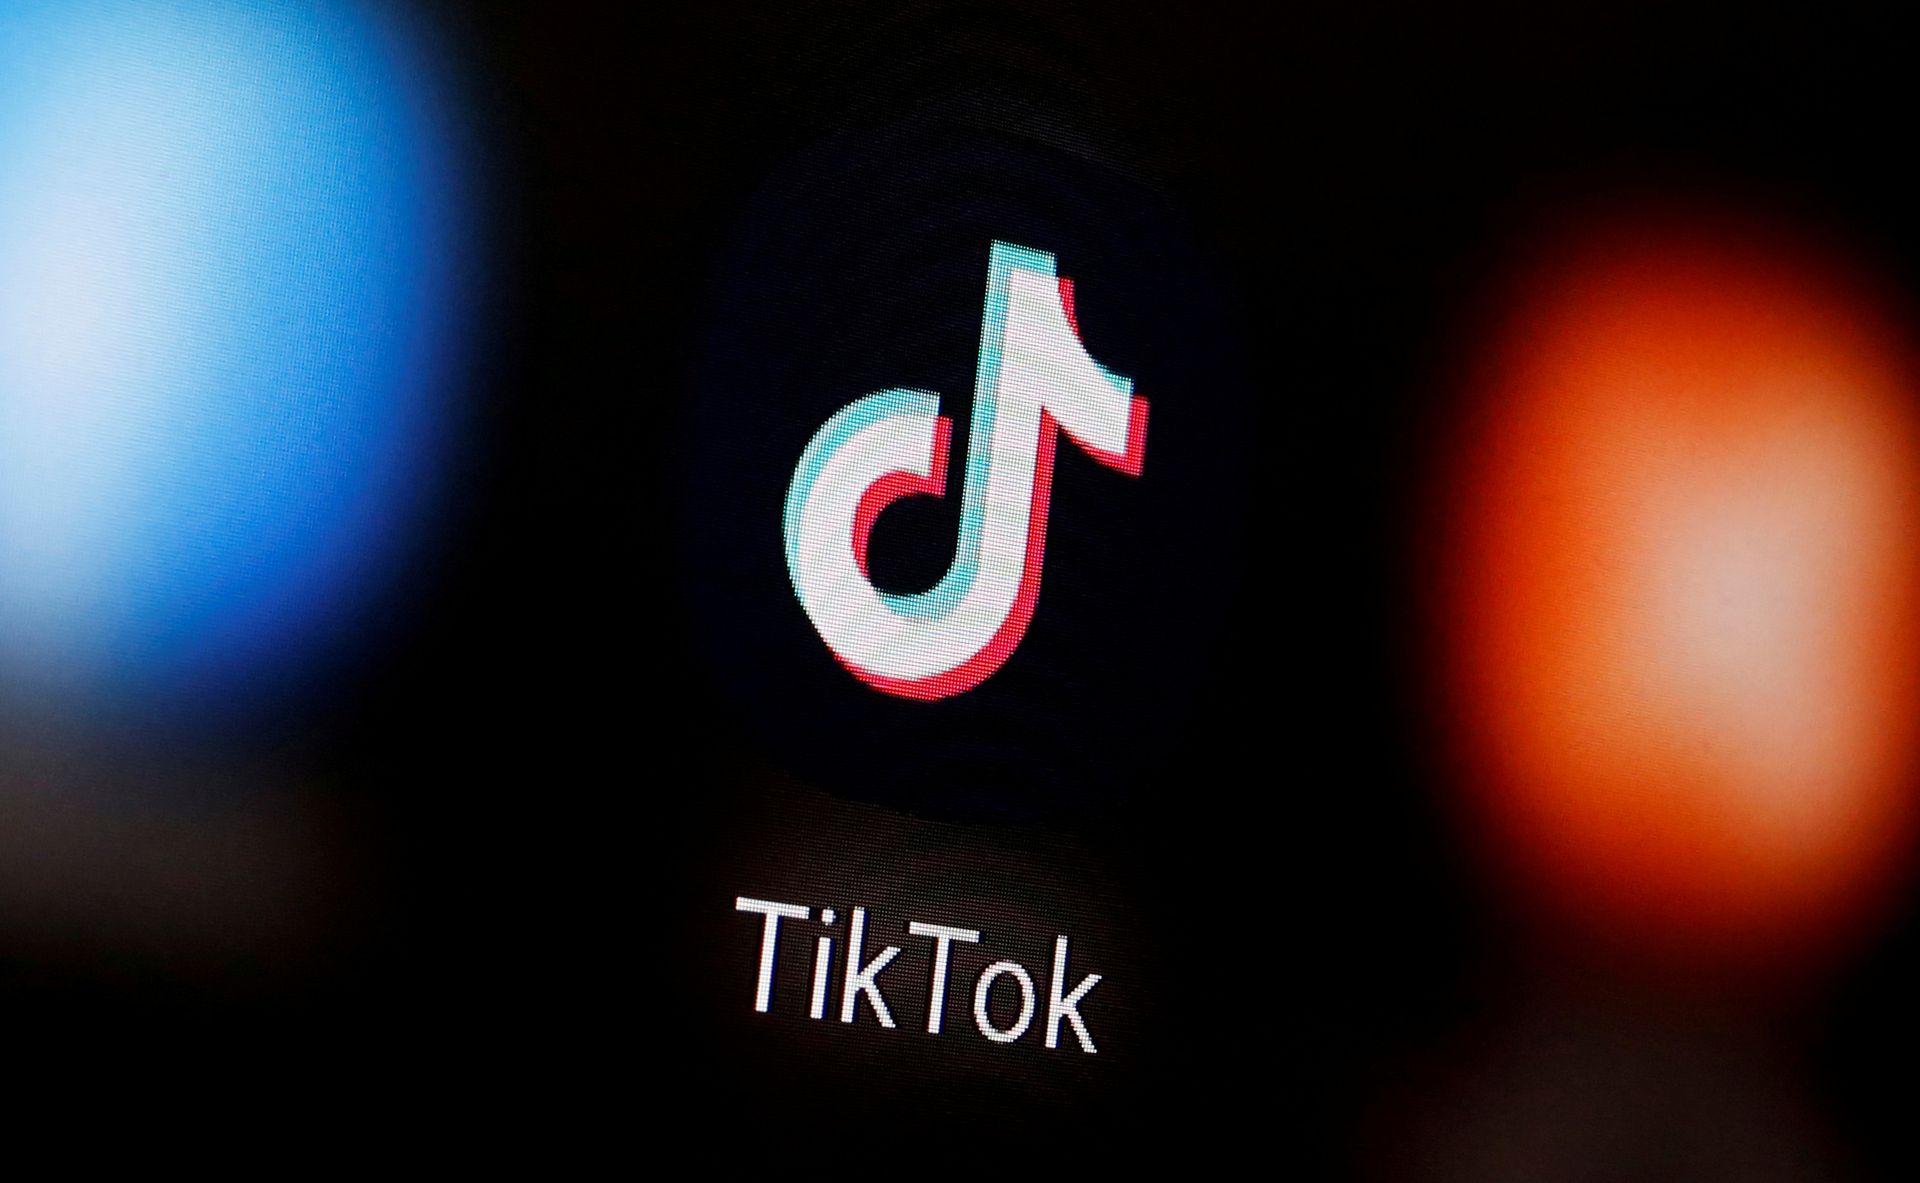 中国公司字节跳动称自身是一个全球化公司，旗下产品TikTok在全球市场拥有众多用户。（Reuters）